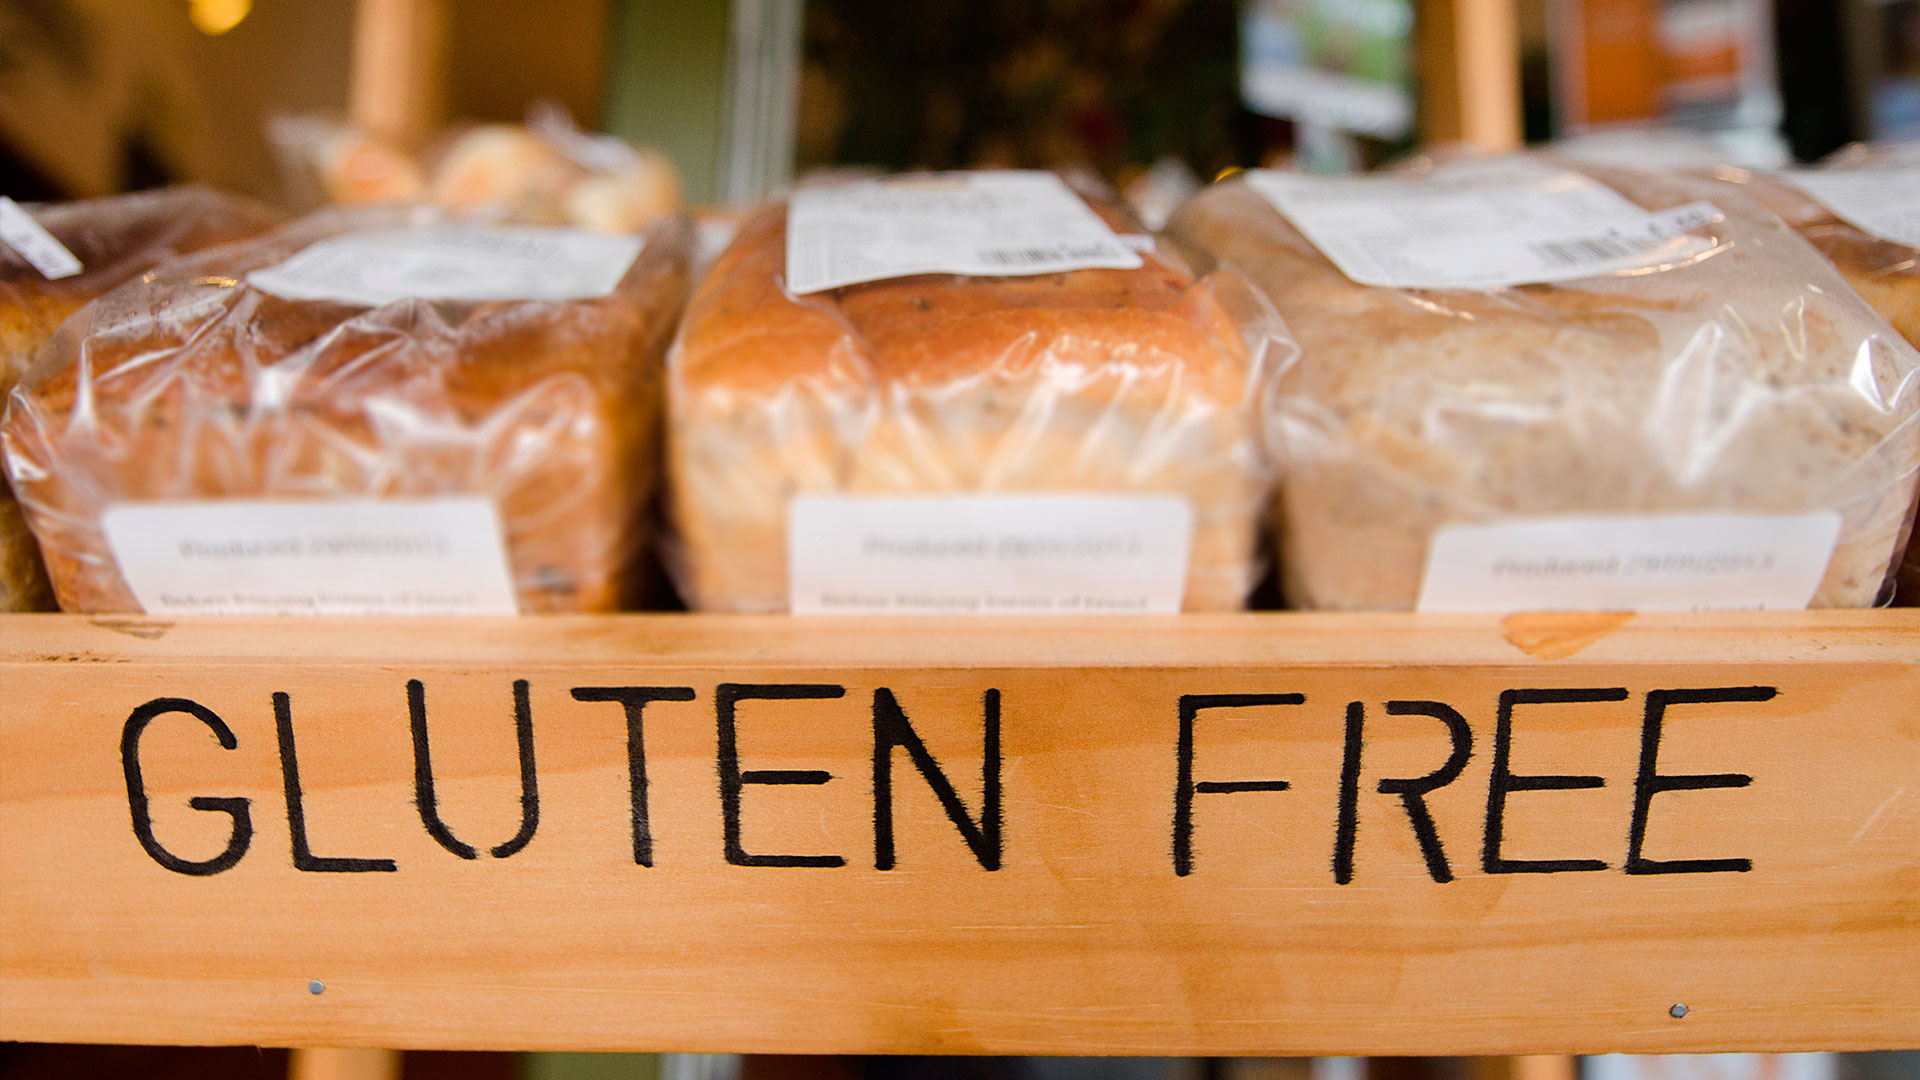 Bilde av brød merket "gluten free".